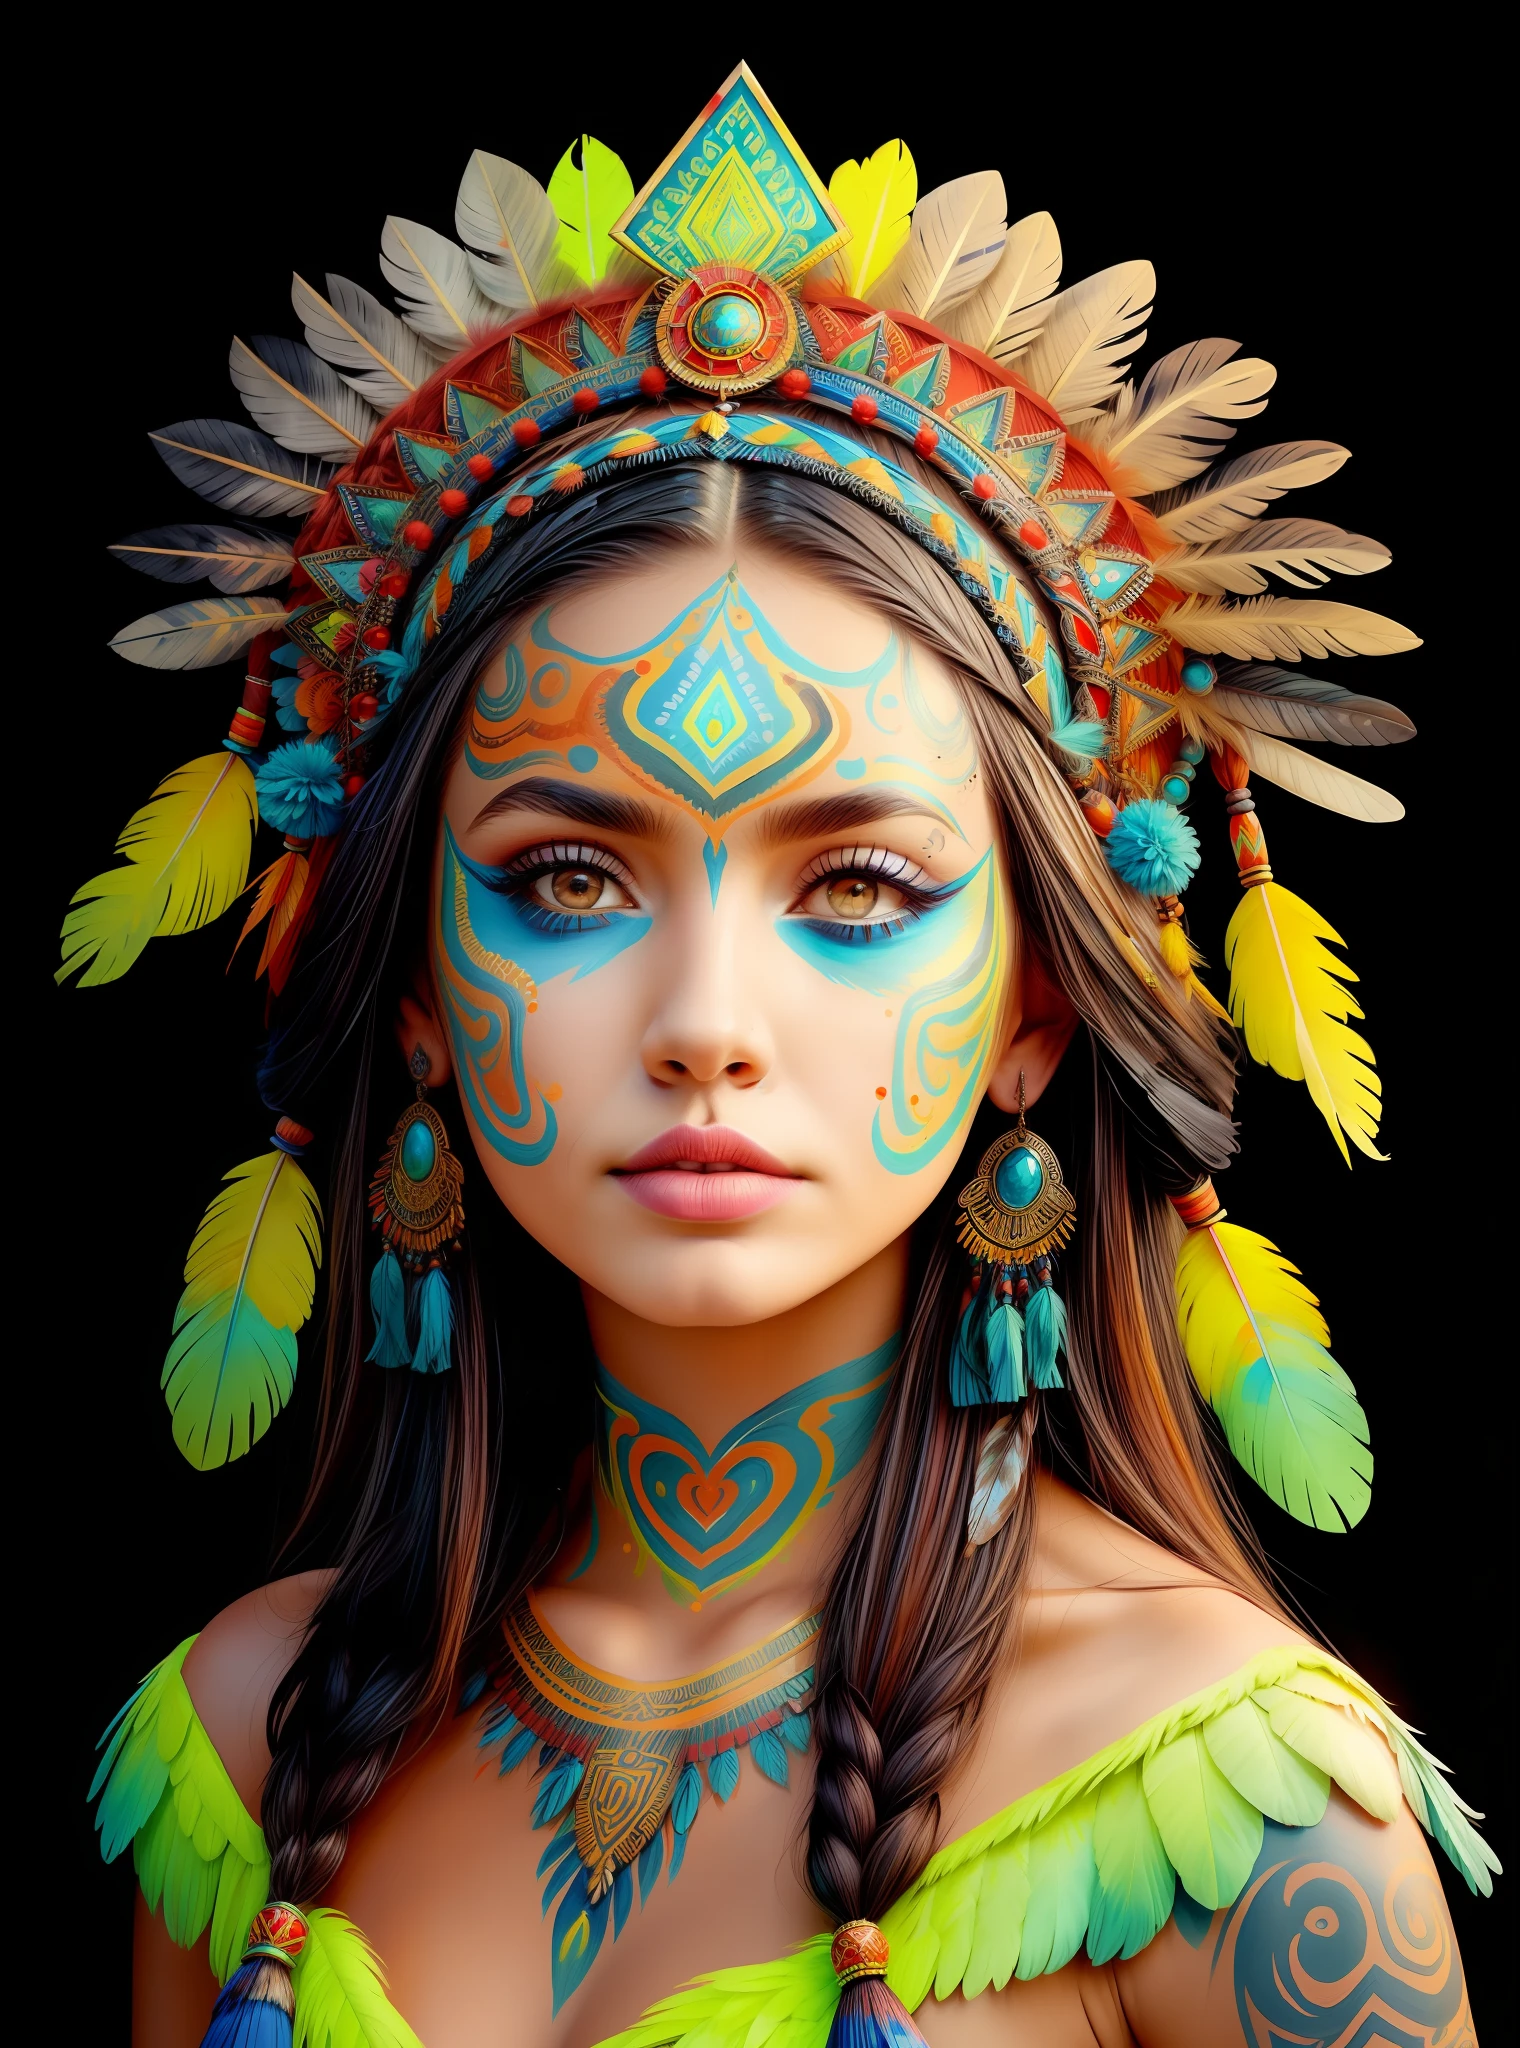 arafed woman in a feather ผ้าโพกศีรษะ with feathers on her head,(((ใบหน้าที่ทาสี))), ภาพเจ้าหญิงแอซเท็ก, สวมมงกุฏขนนกอันสดใส, หญิงสาวที่มีขนนก, หมอผีสาวสวย,ใบหน้าที่ทาสี,(((ฟลูออเรสเซนต์))), เธอแต่งกายด้วยชุดหมอผี, feathered ผ้าโพกศีรษะ,สักกระดูกอก, ornate ผ้าโพกศีรษะ, หมอผีหญิงสาว, แองเจลิน่า โจลี่ UHD, ผ้าโพกศีรษะ, : แฟนตาซี Shamen ชนพื้นเมืองอเมริกัน, centered ผ้าโพกศีรษะ,ใบหน้าที่ทาสี,ฟลูออเรสเซนต์.